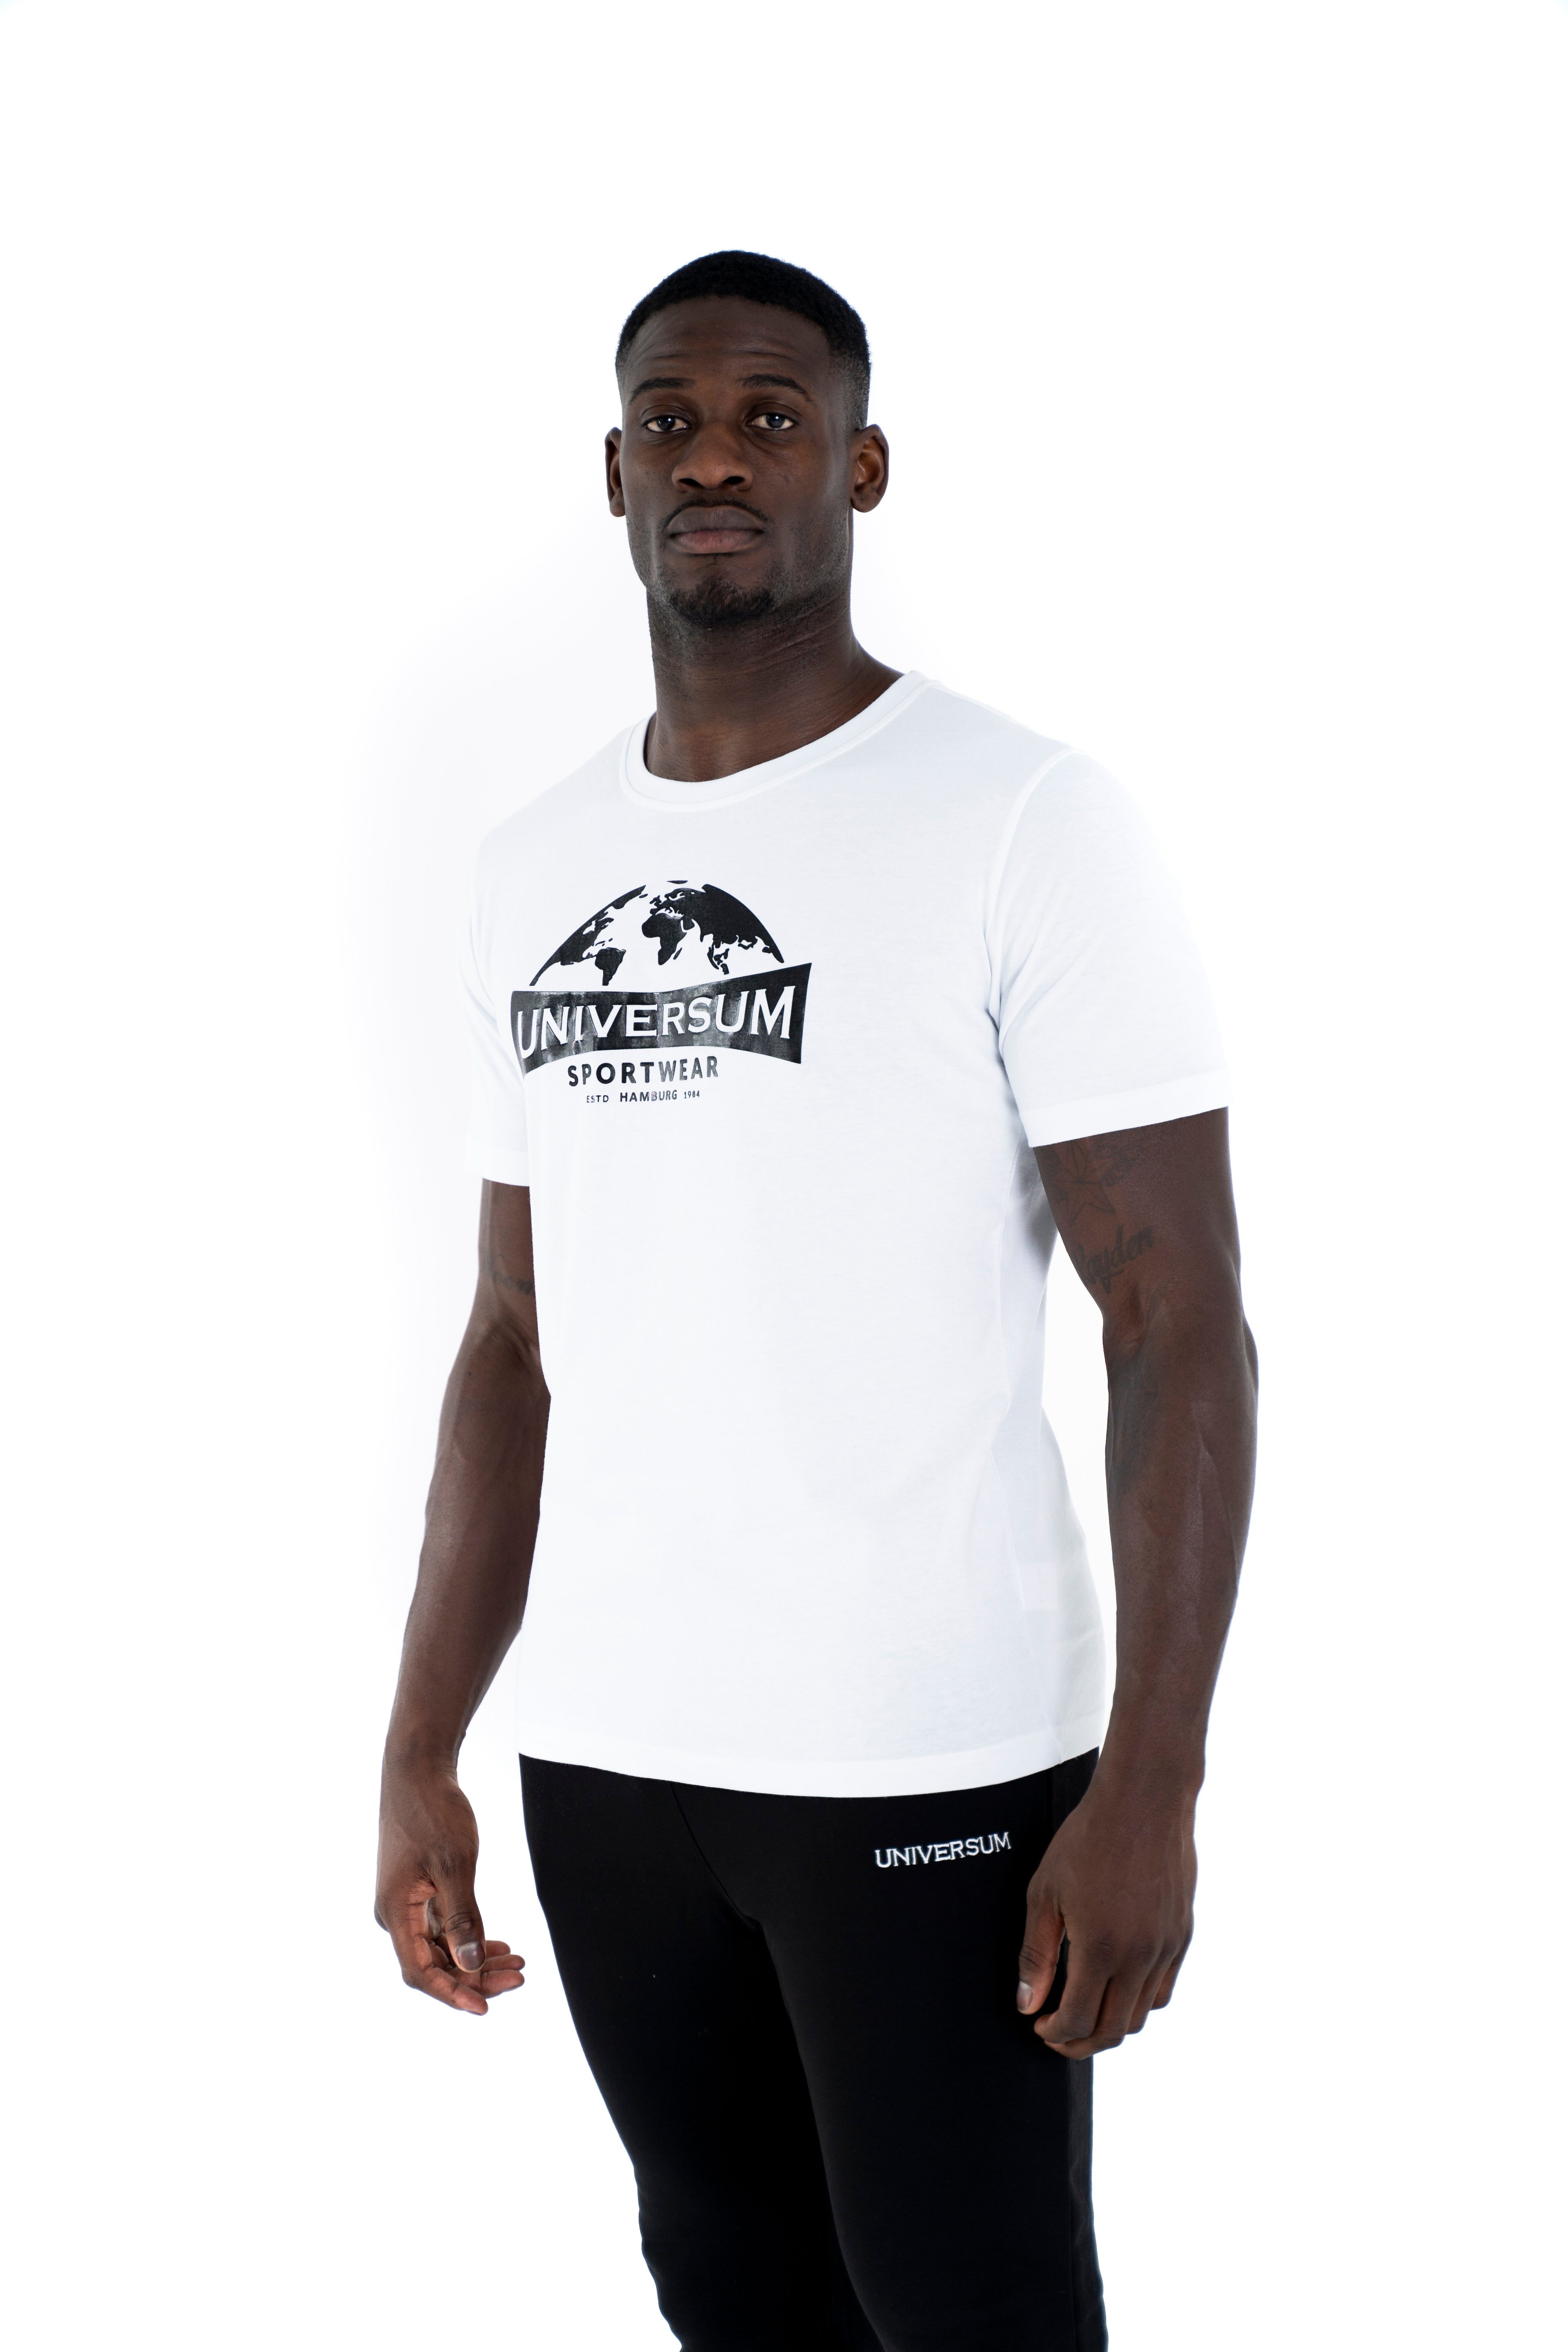 C-Neck Sportwear Cotton Modern weiß Universum Rundhalsausschnitt, Baumwoll Shirt T-Shirt 100%